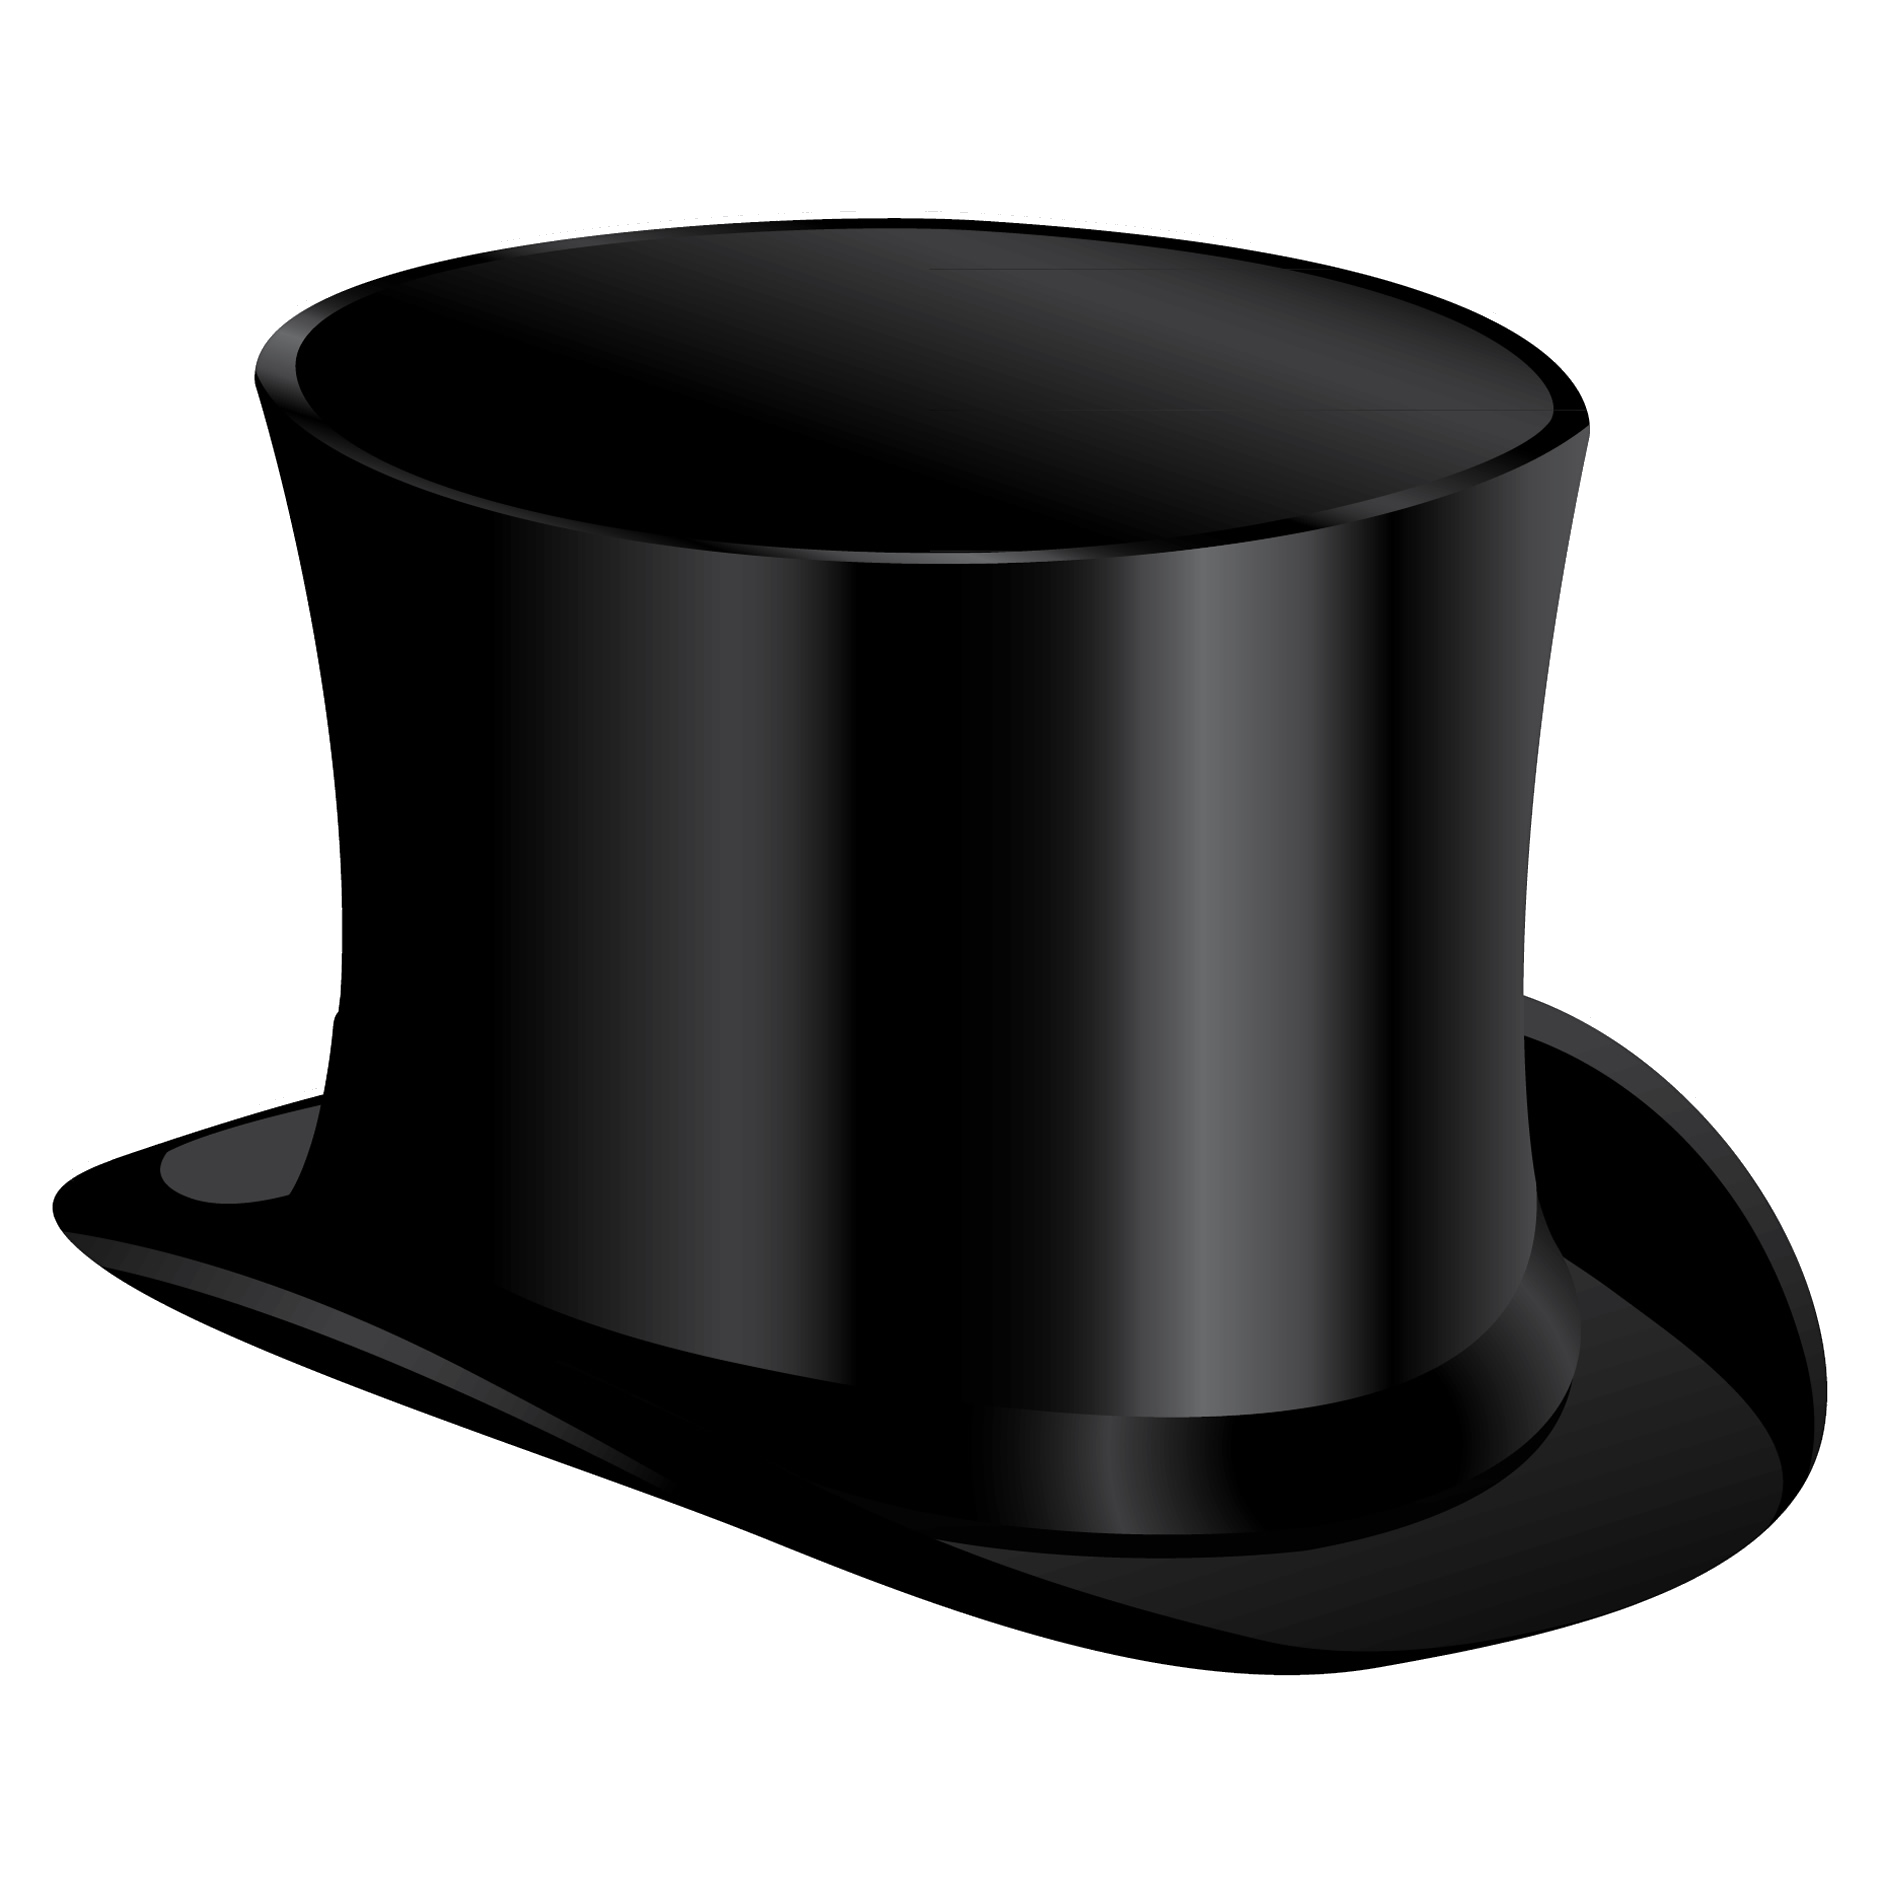 Шляпа картинка на прозрачном фоне. Шляпа цилиндр. Шляпа цилиндр черный. Черный цилиндр головной убор. Шляпа на прозрачном фоне.